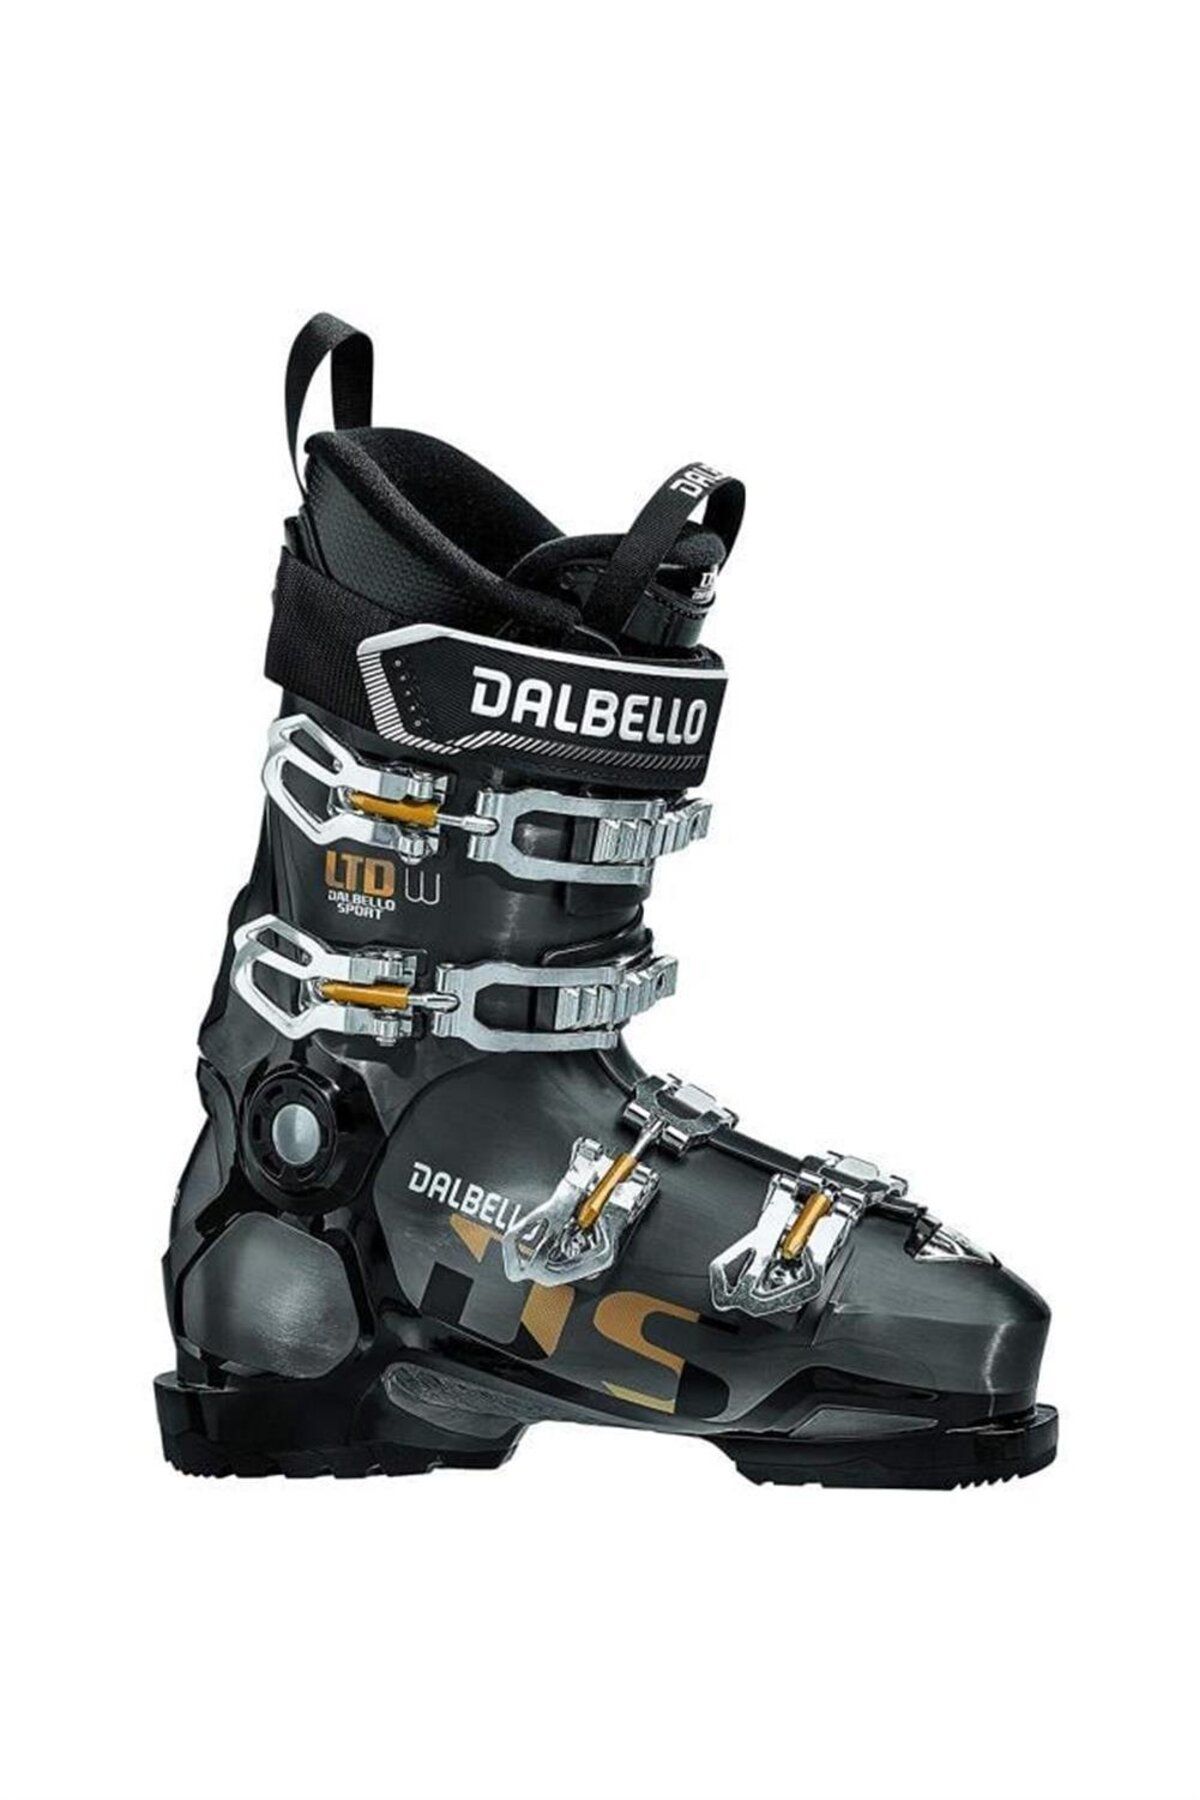 Dalbello Ds Ltd Kadın Kayak Ayakkabı Antrasit / Siyah